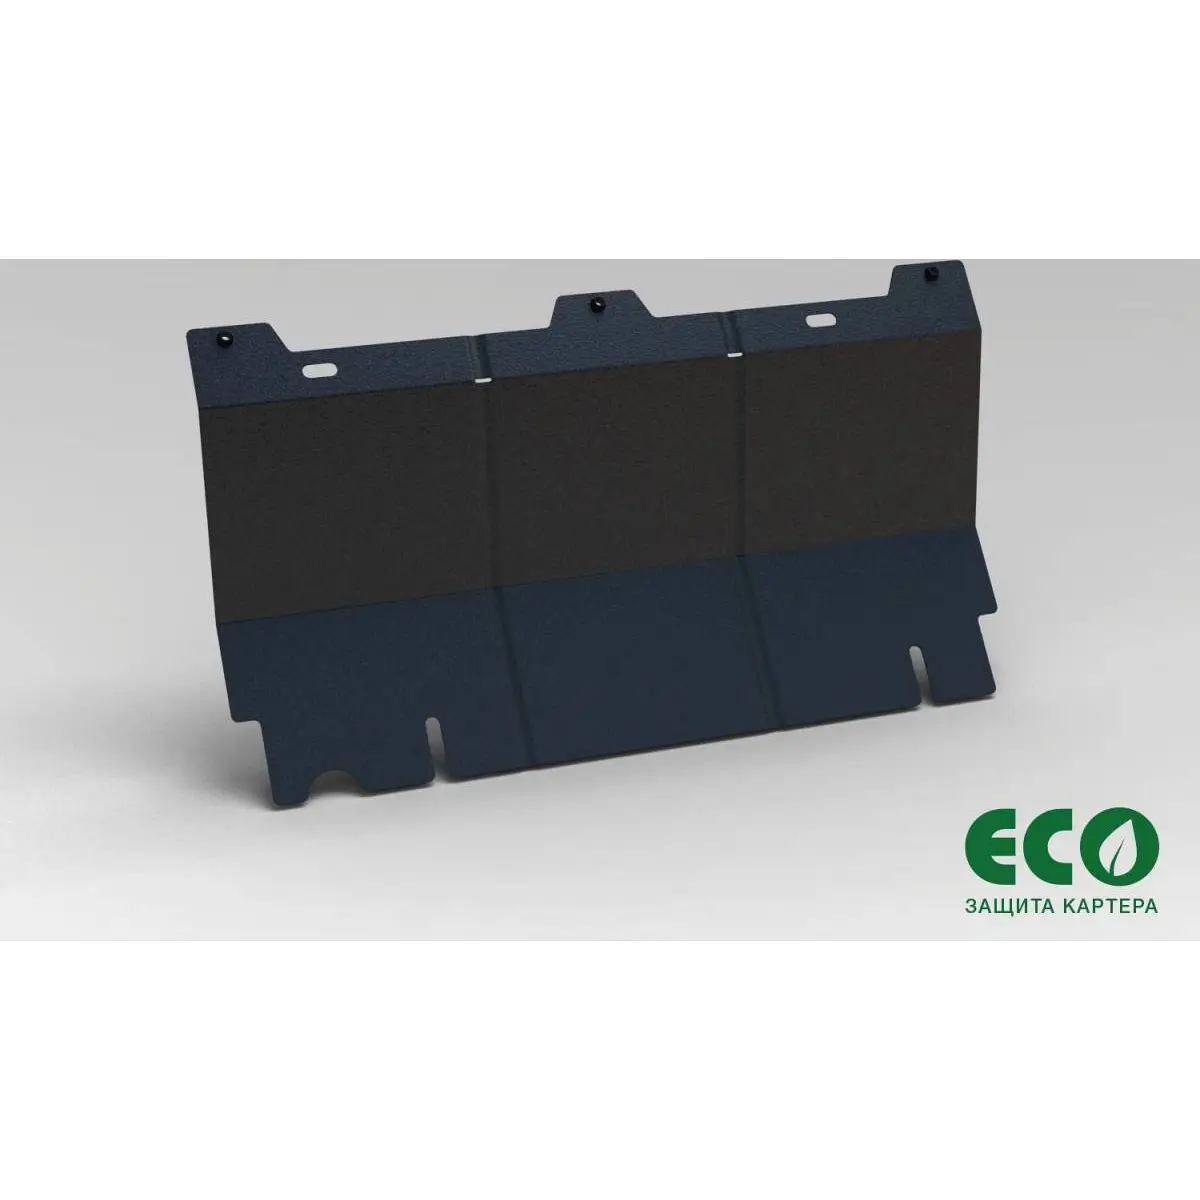 Комплект защиты радиатора и крепежа Eco NO9 HCU 1437099146 6Z4X0V eco9903320 изображение 0